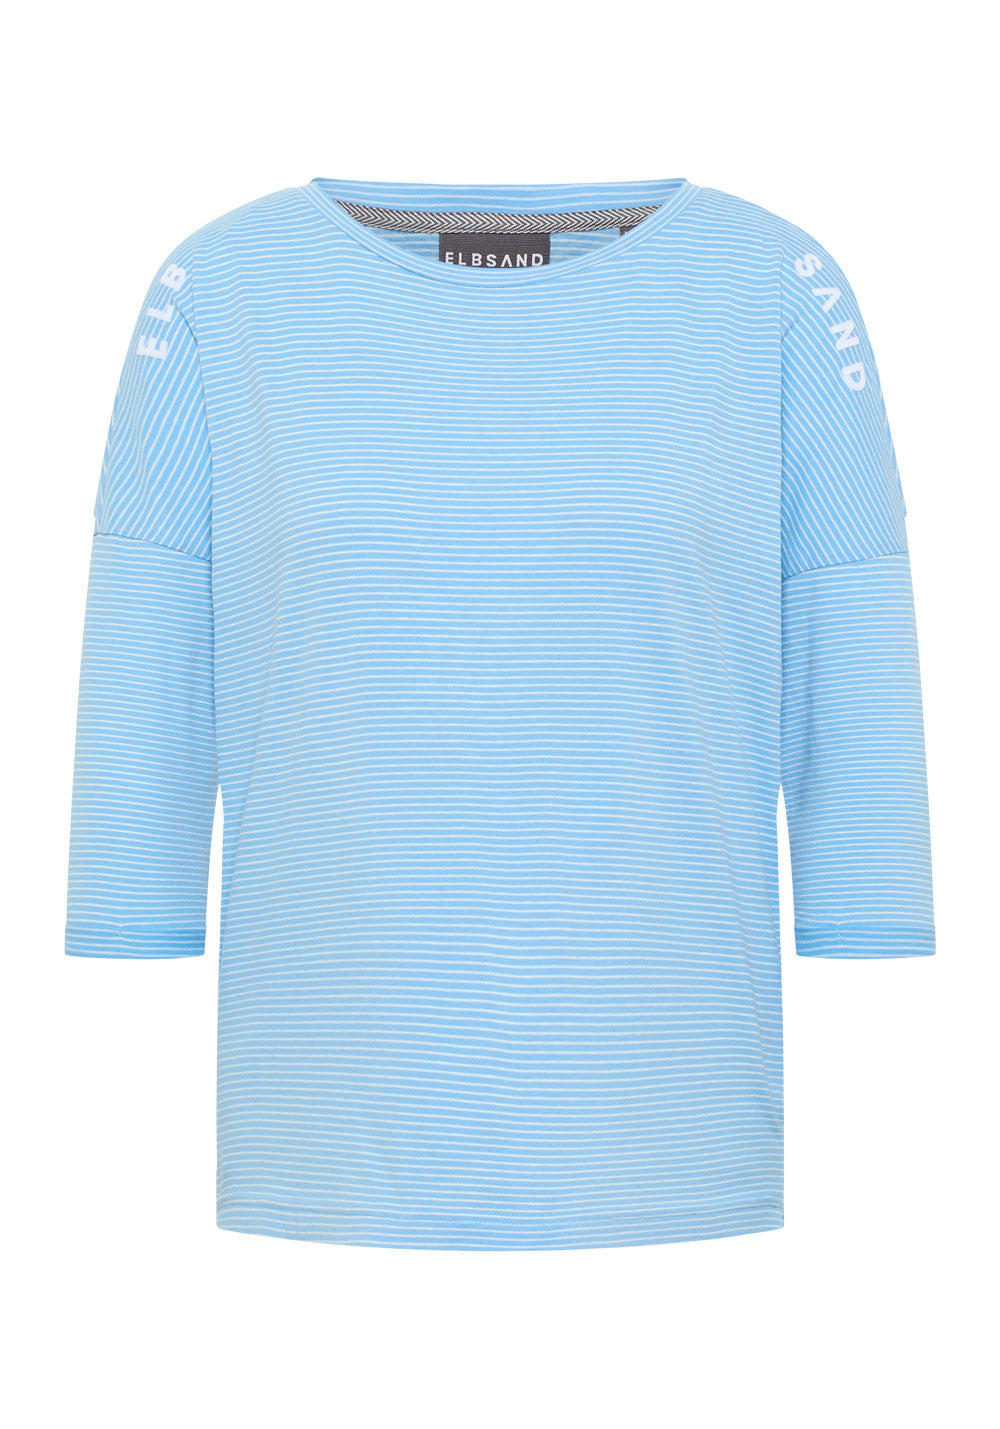 Elbsand | T-Shirt 3/4 - Veera  | 024 Light Azure + Cloud White